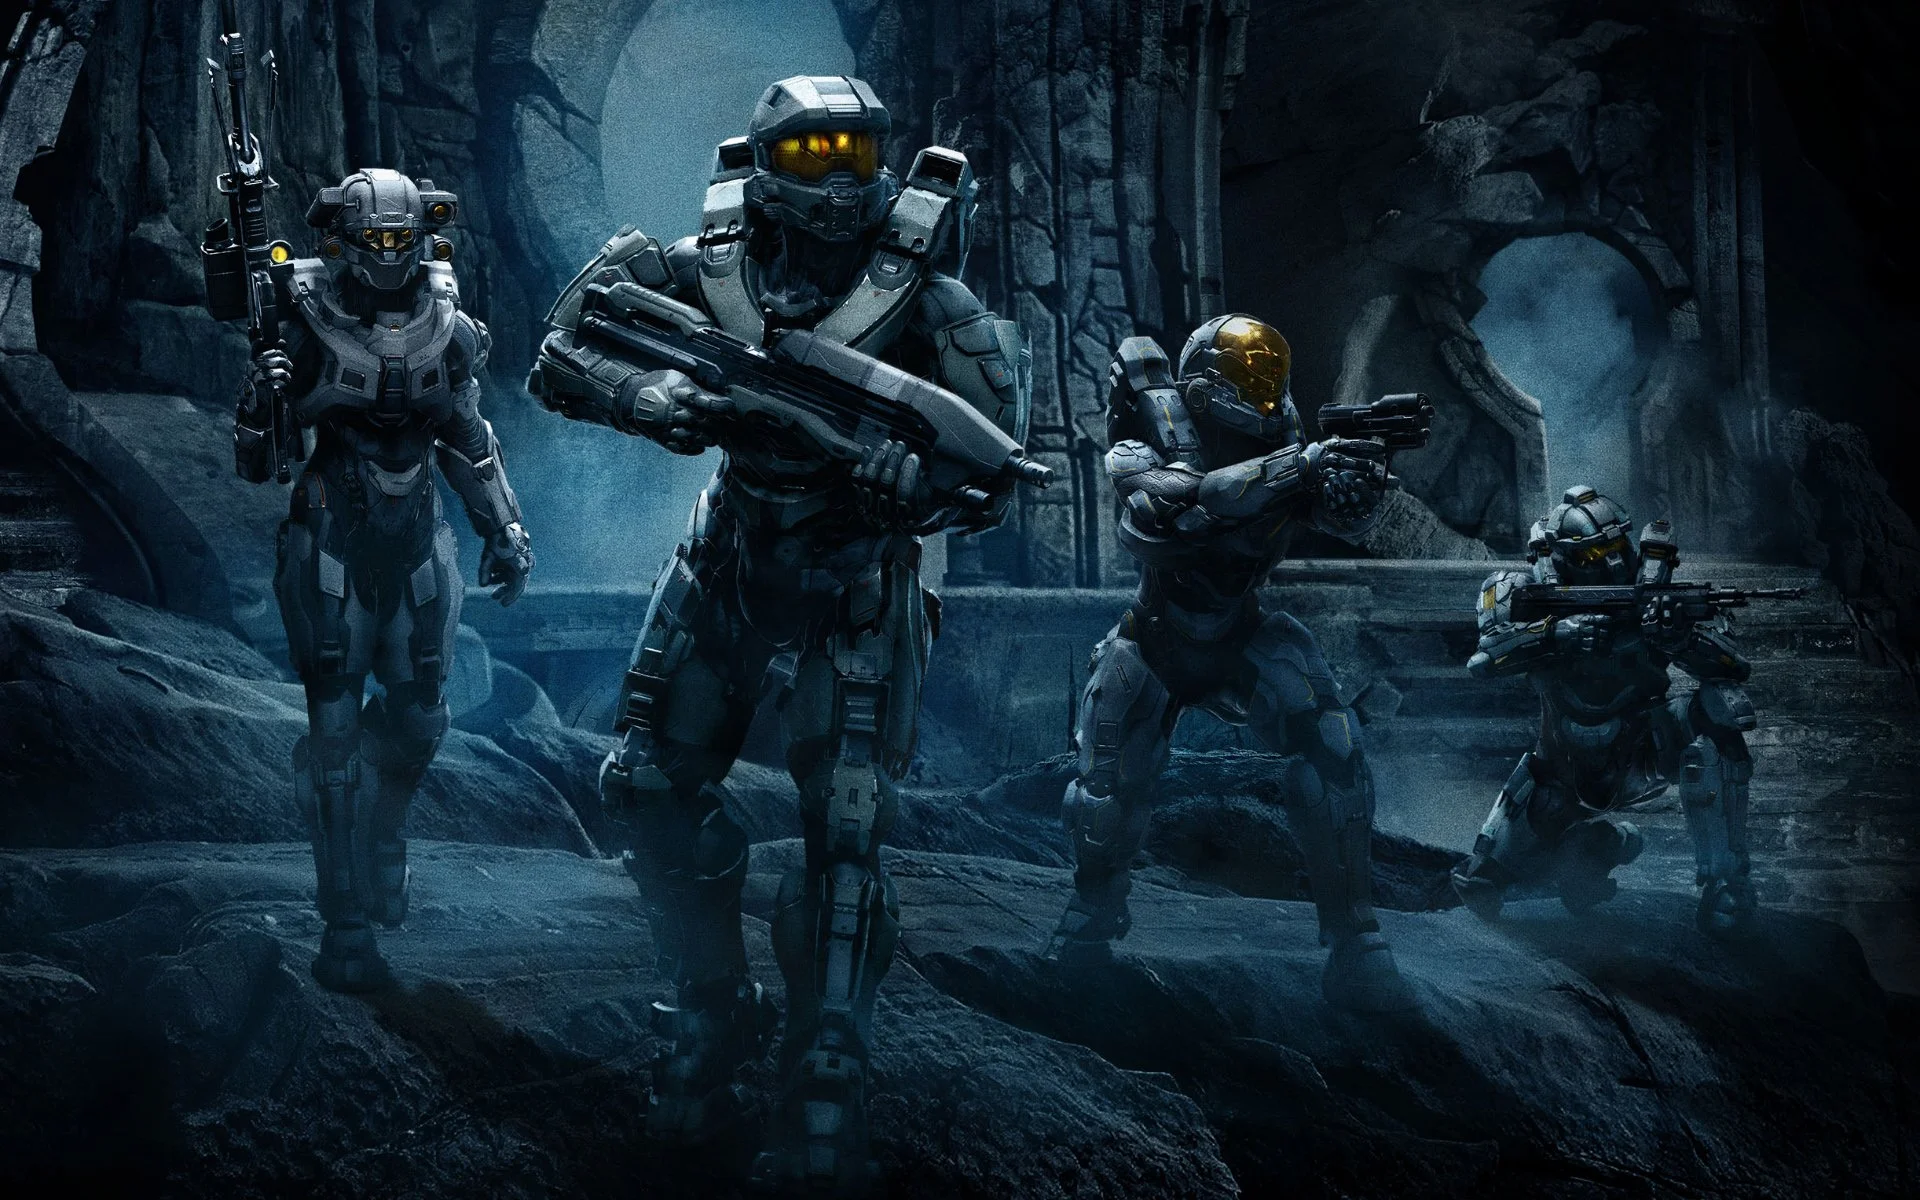 Halo 5: ранги в Arena, бан-система, кланы, первые 30 минут и музыка - фото 5